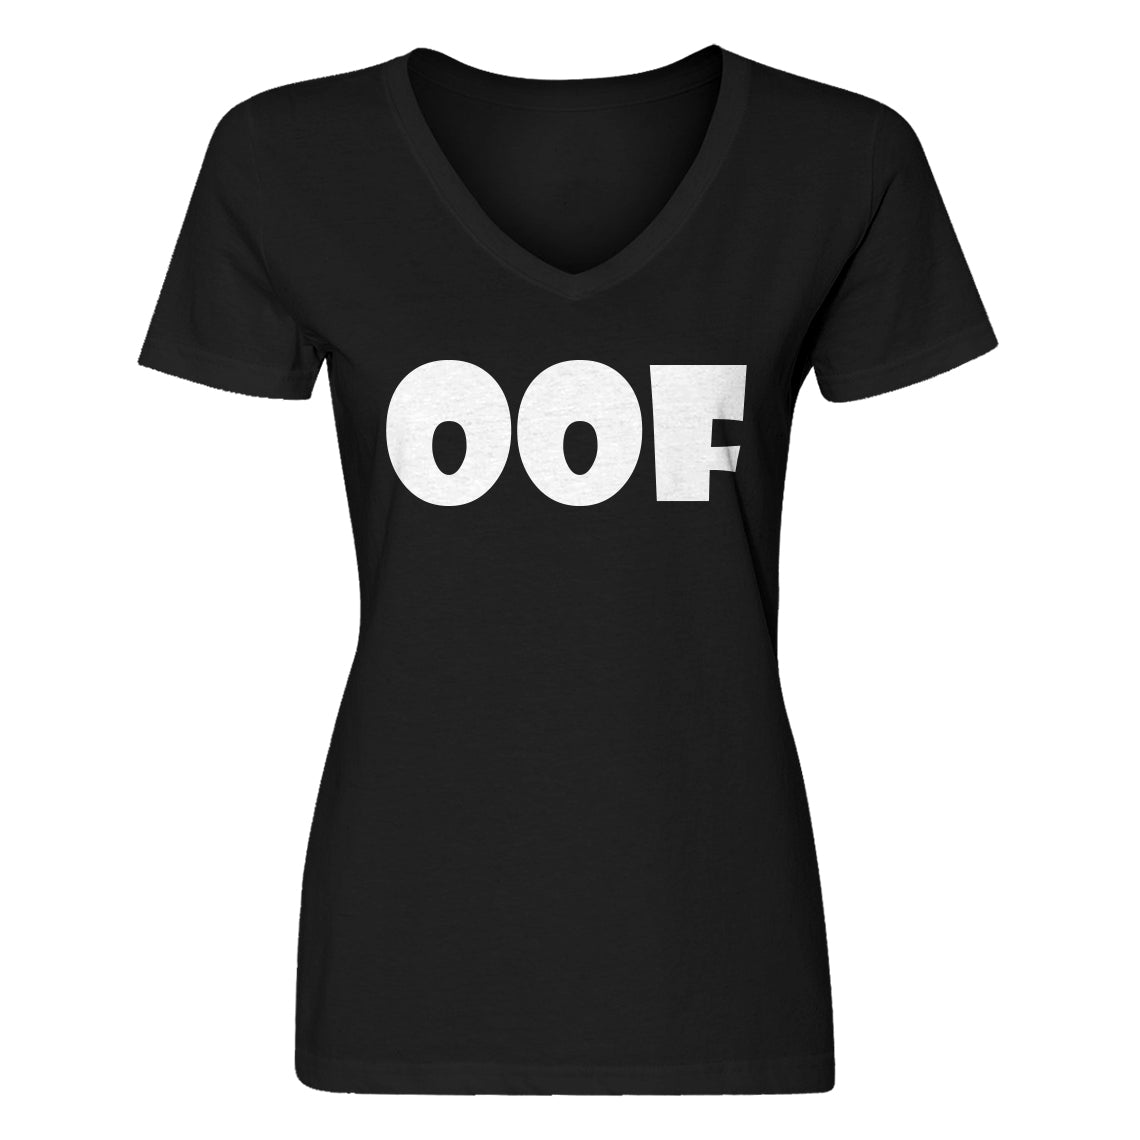 Womens Oof V-Neck T-shirt